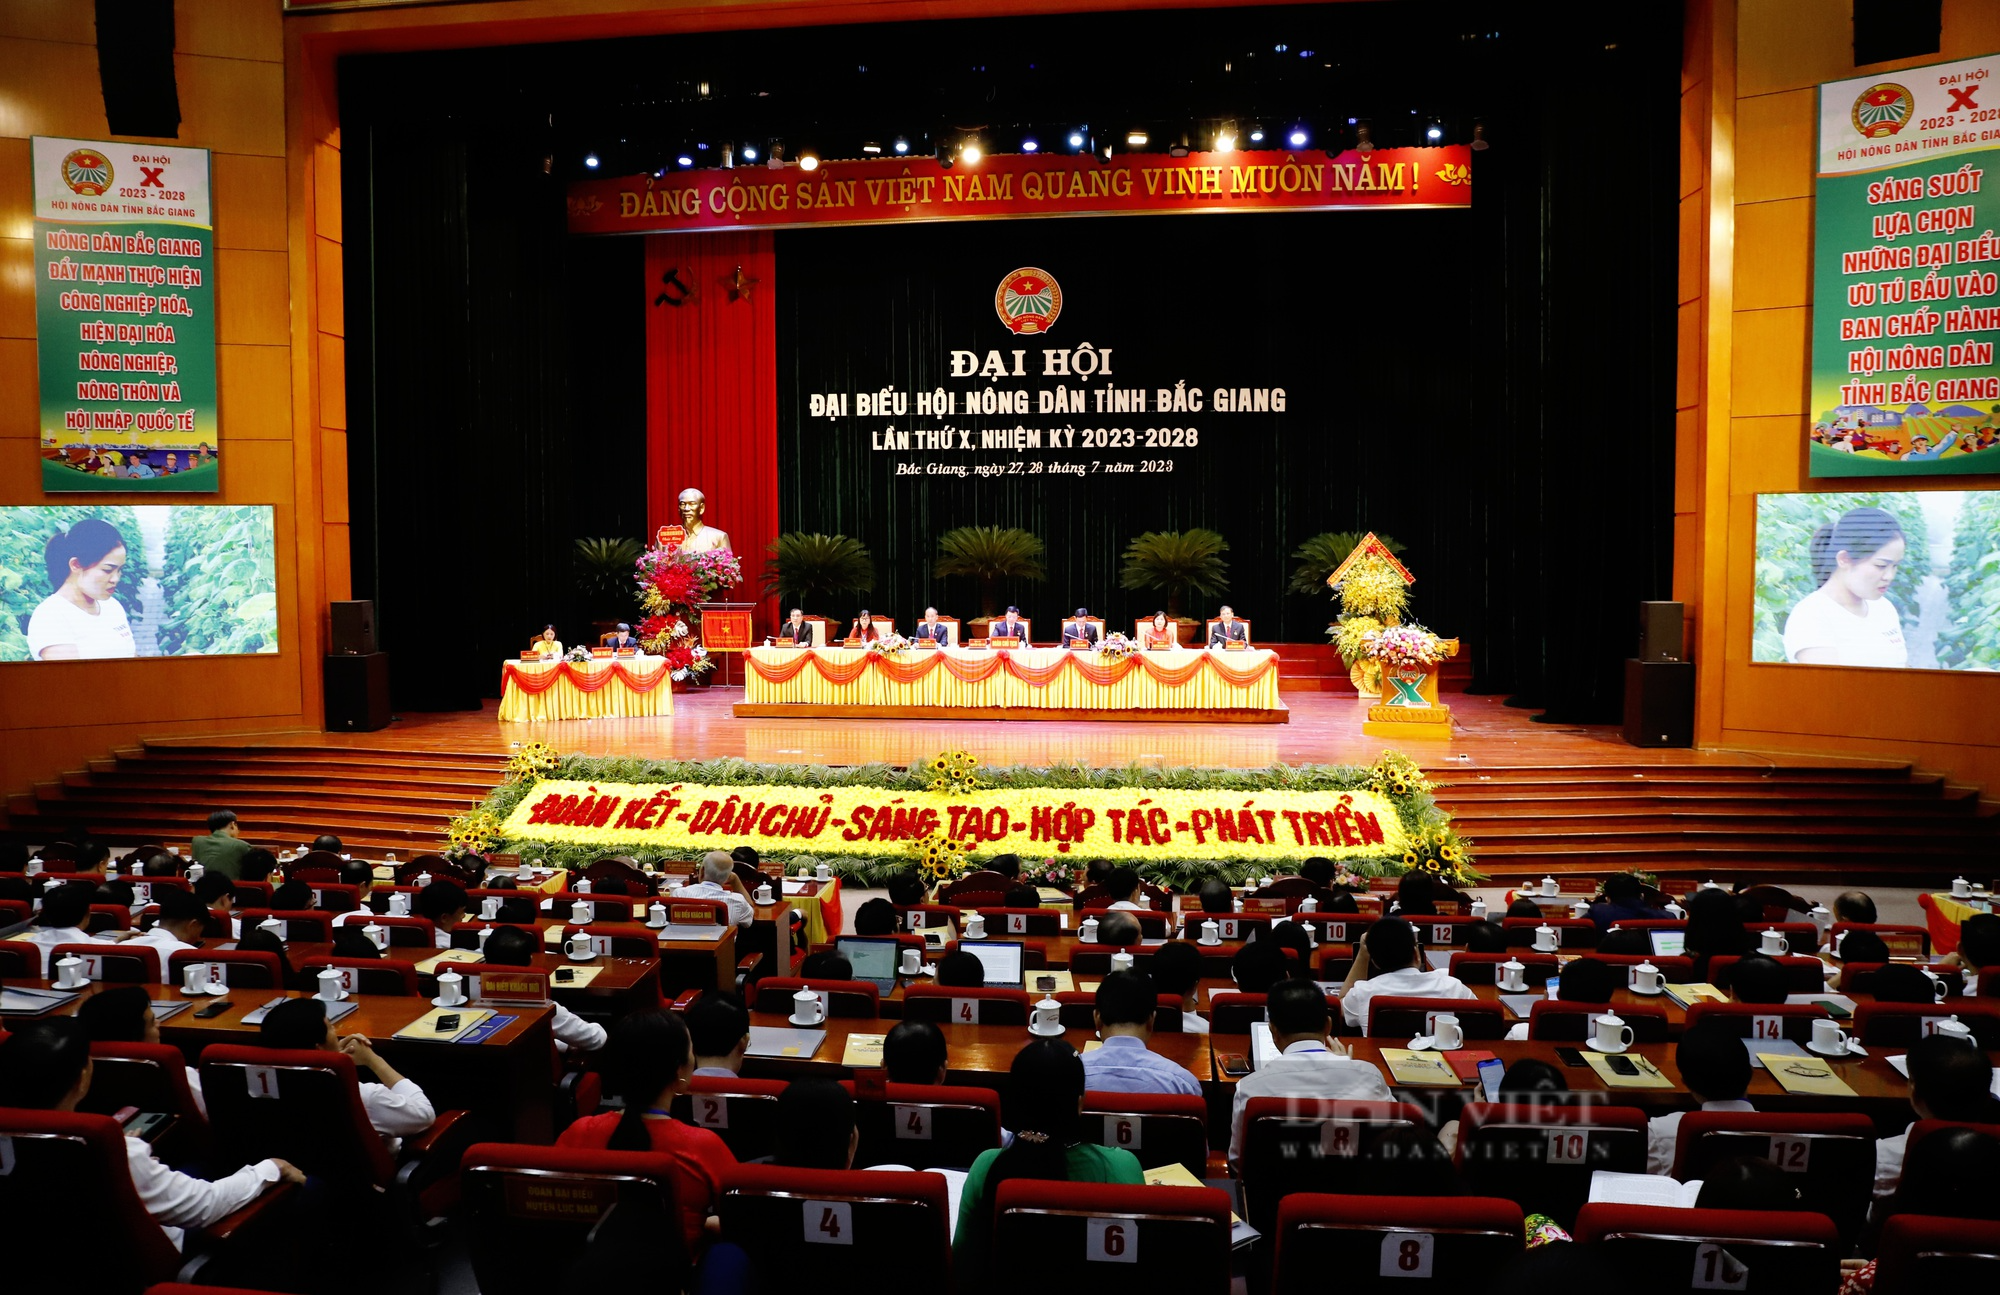 Hình ảnh Đại hội đại biểu Hội Nông dân tỉnh Bắc Giang lần thứ X, nhiệm kỳ 2023-2028 - Ảnh 1.